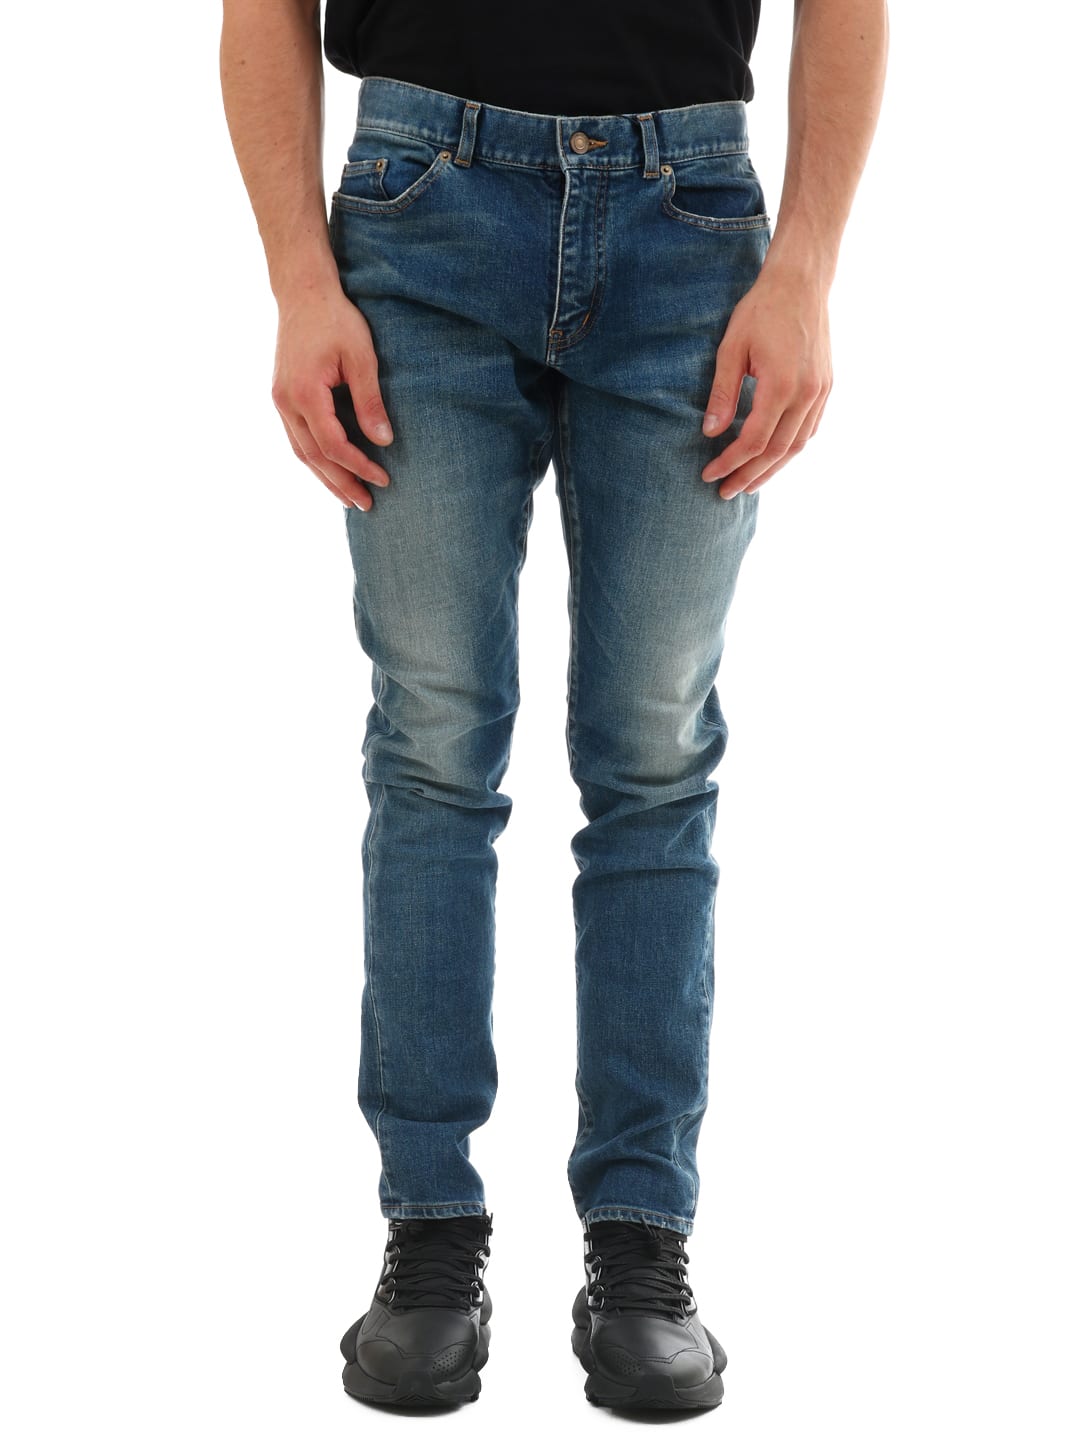 Saint Laurent Skinny Jeans In Light Blue | ModeSens